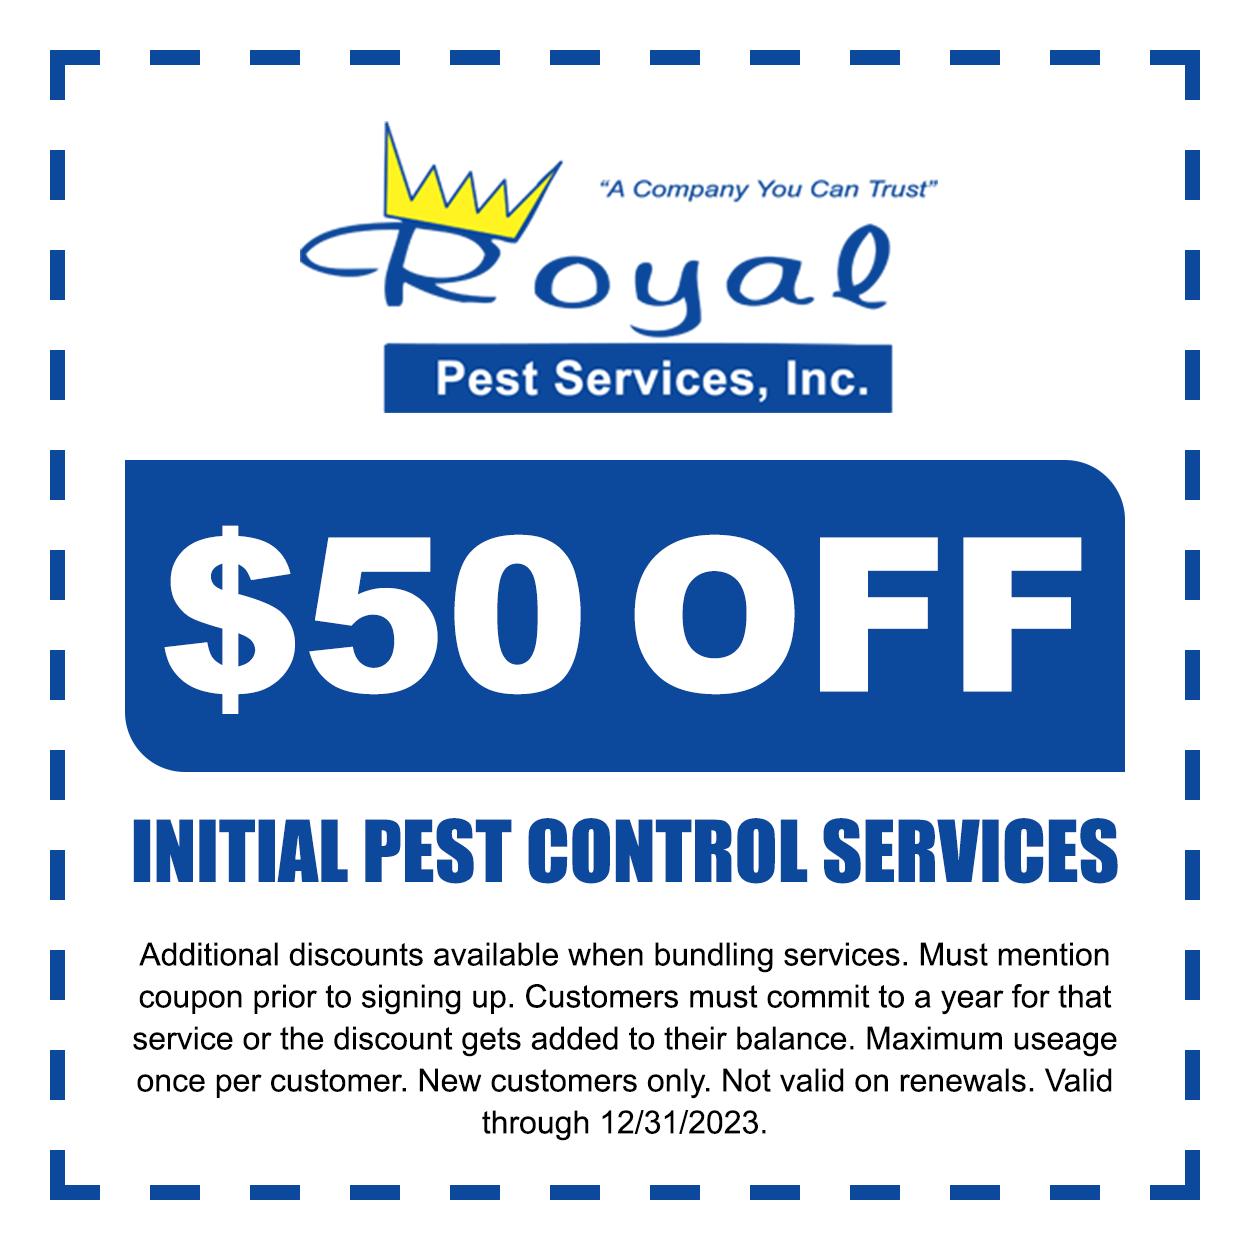 pest control coupon